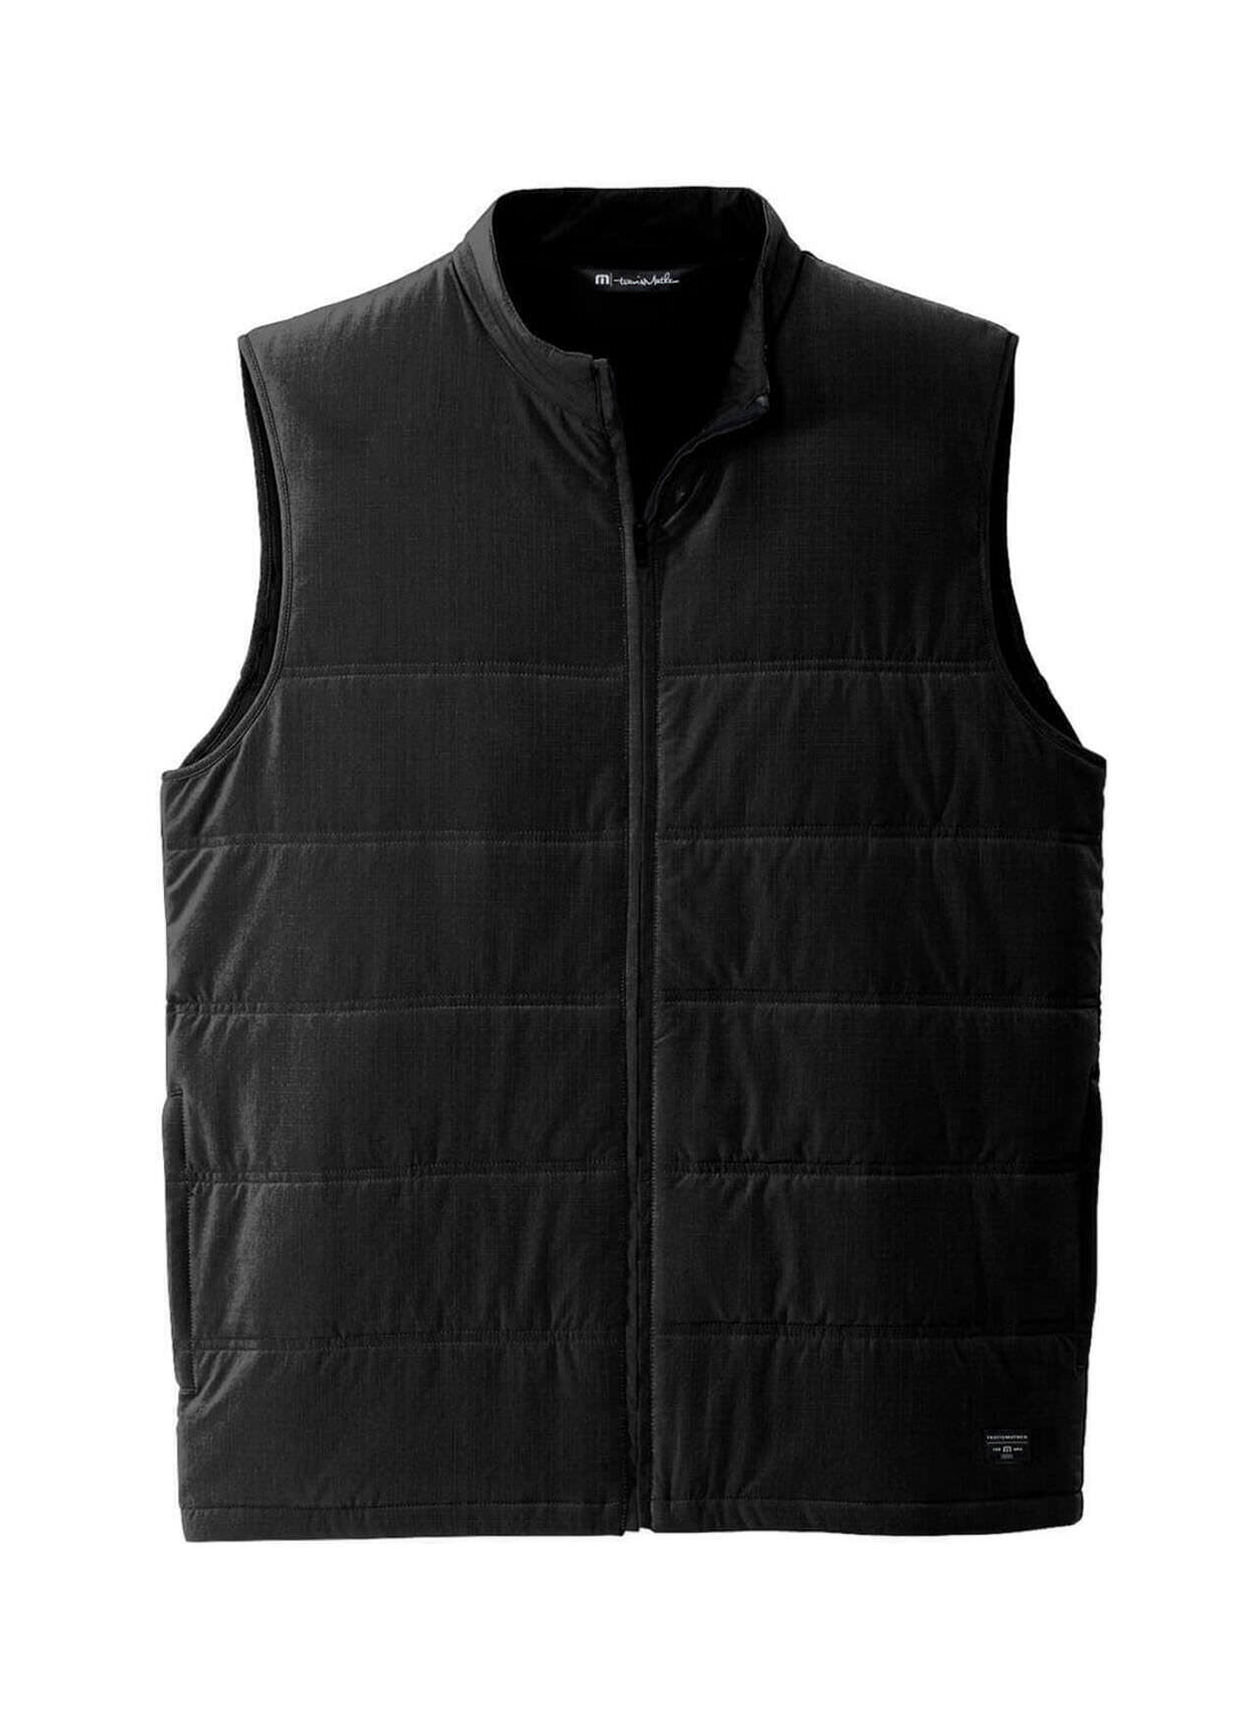 Embroidered TravisMathew Men's Black Cold Bay Vest | Custom Vest